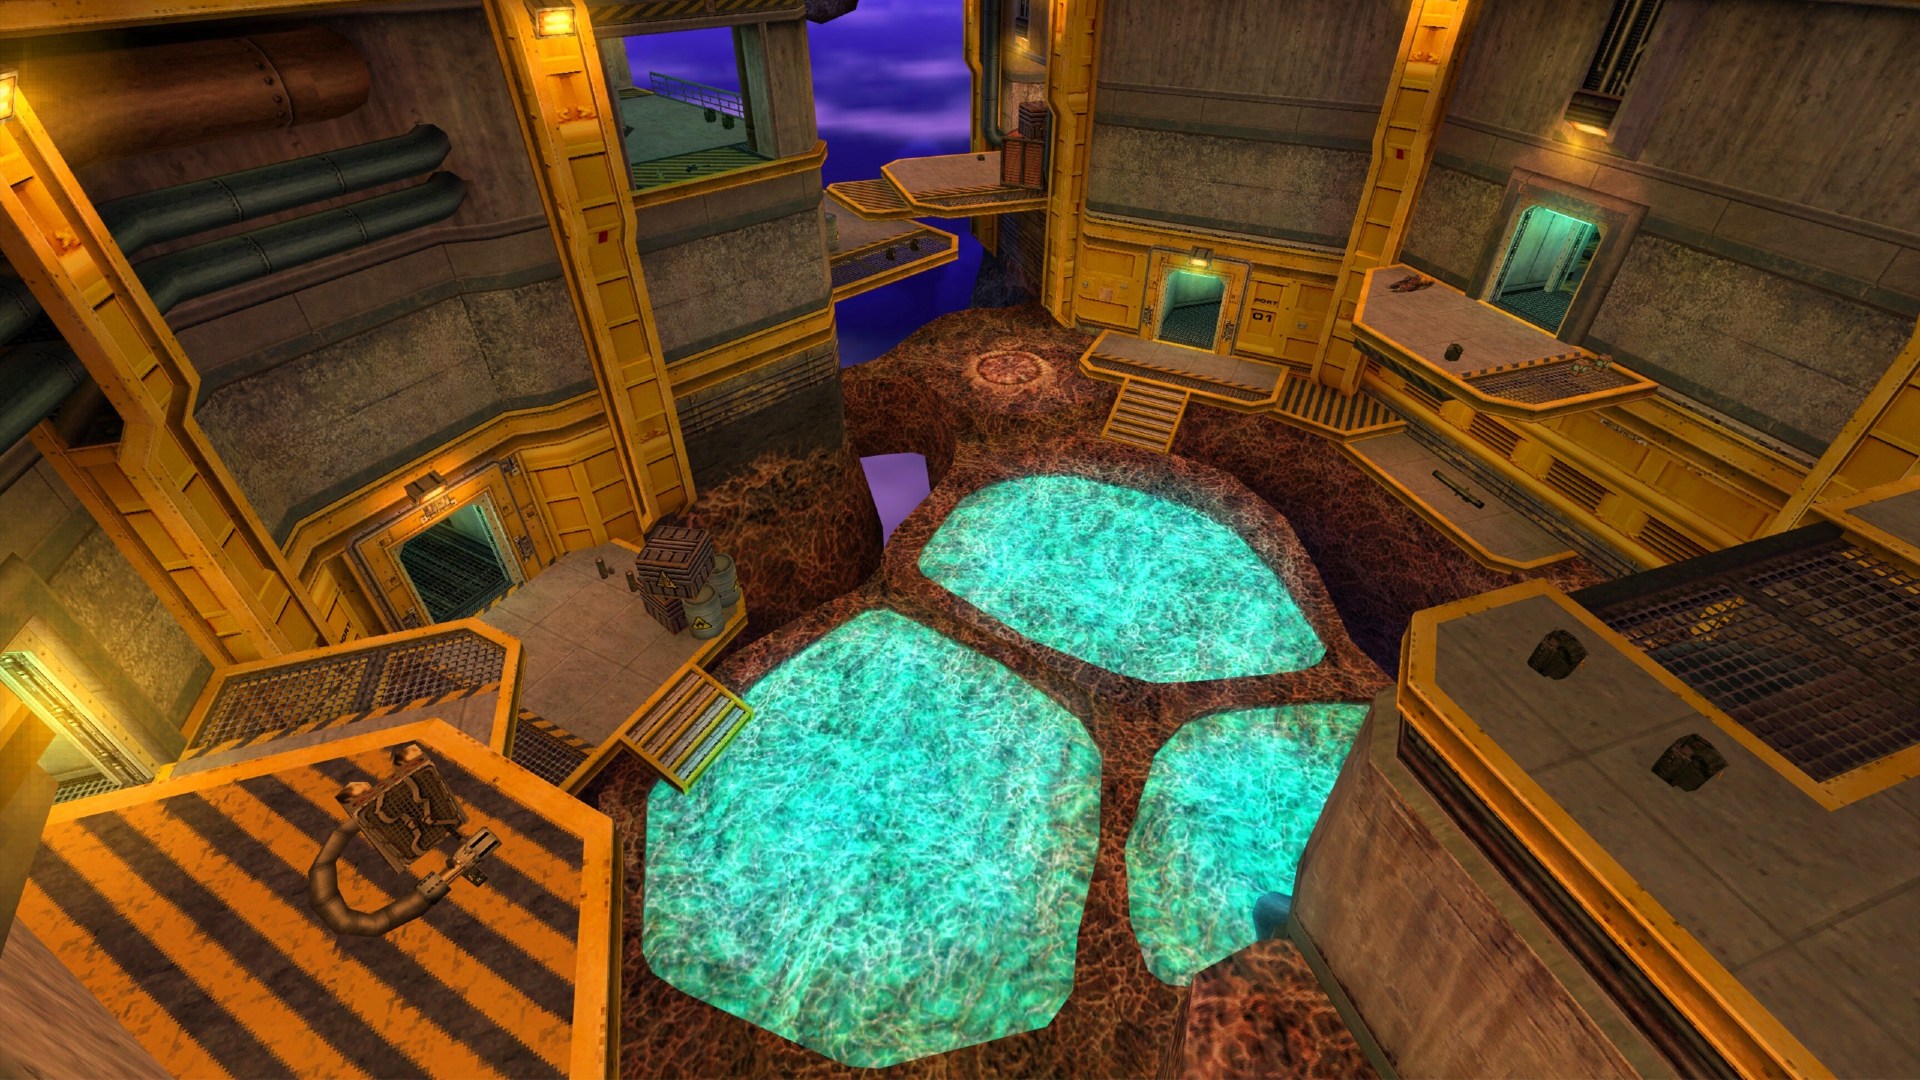 Half-Life-Poolparty-Karte, die das Innere einer Anlage zeigt, die scheinbar in einem violetten Raum schwebt